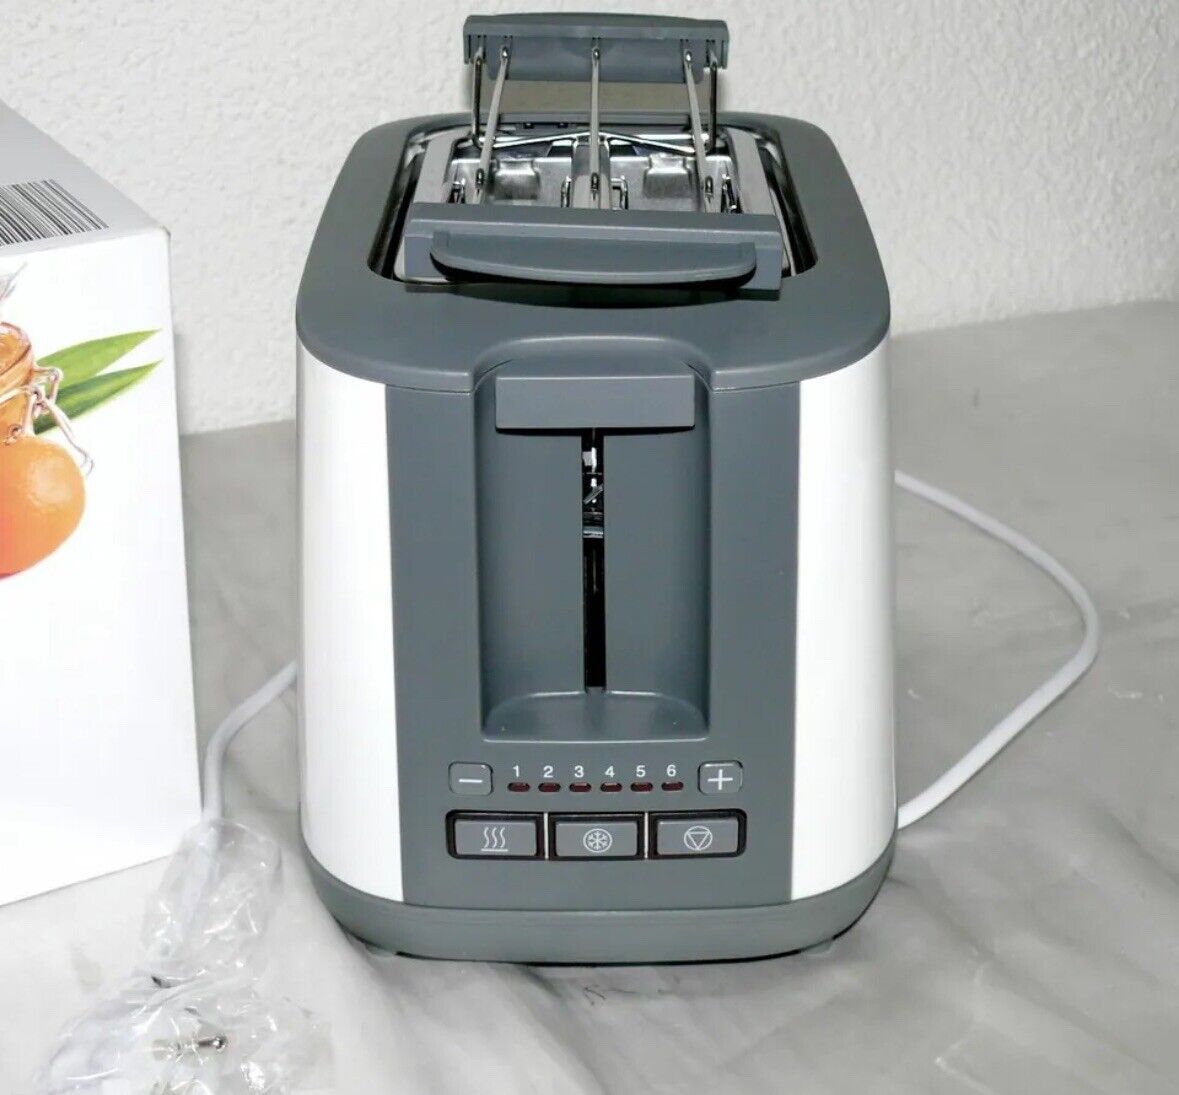 Designer Doppelschlitz Toaster 900W 6 Stufen Abnehm. Brotaufsatz In Weiß